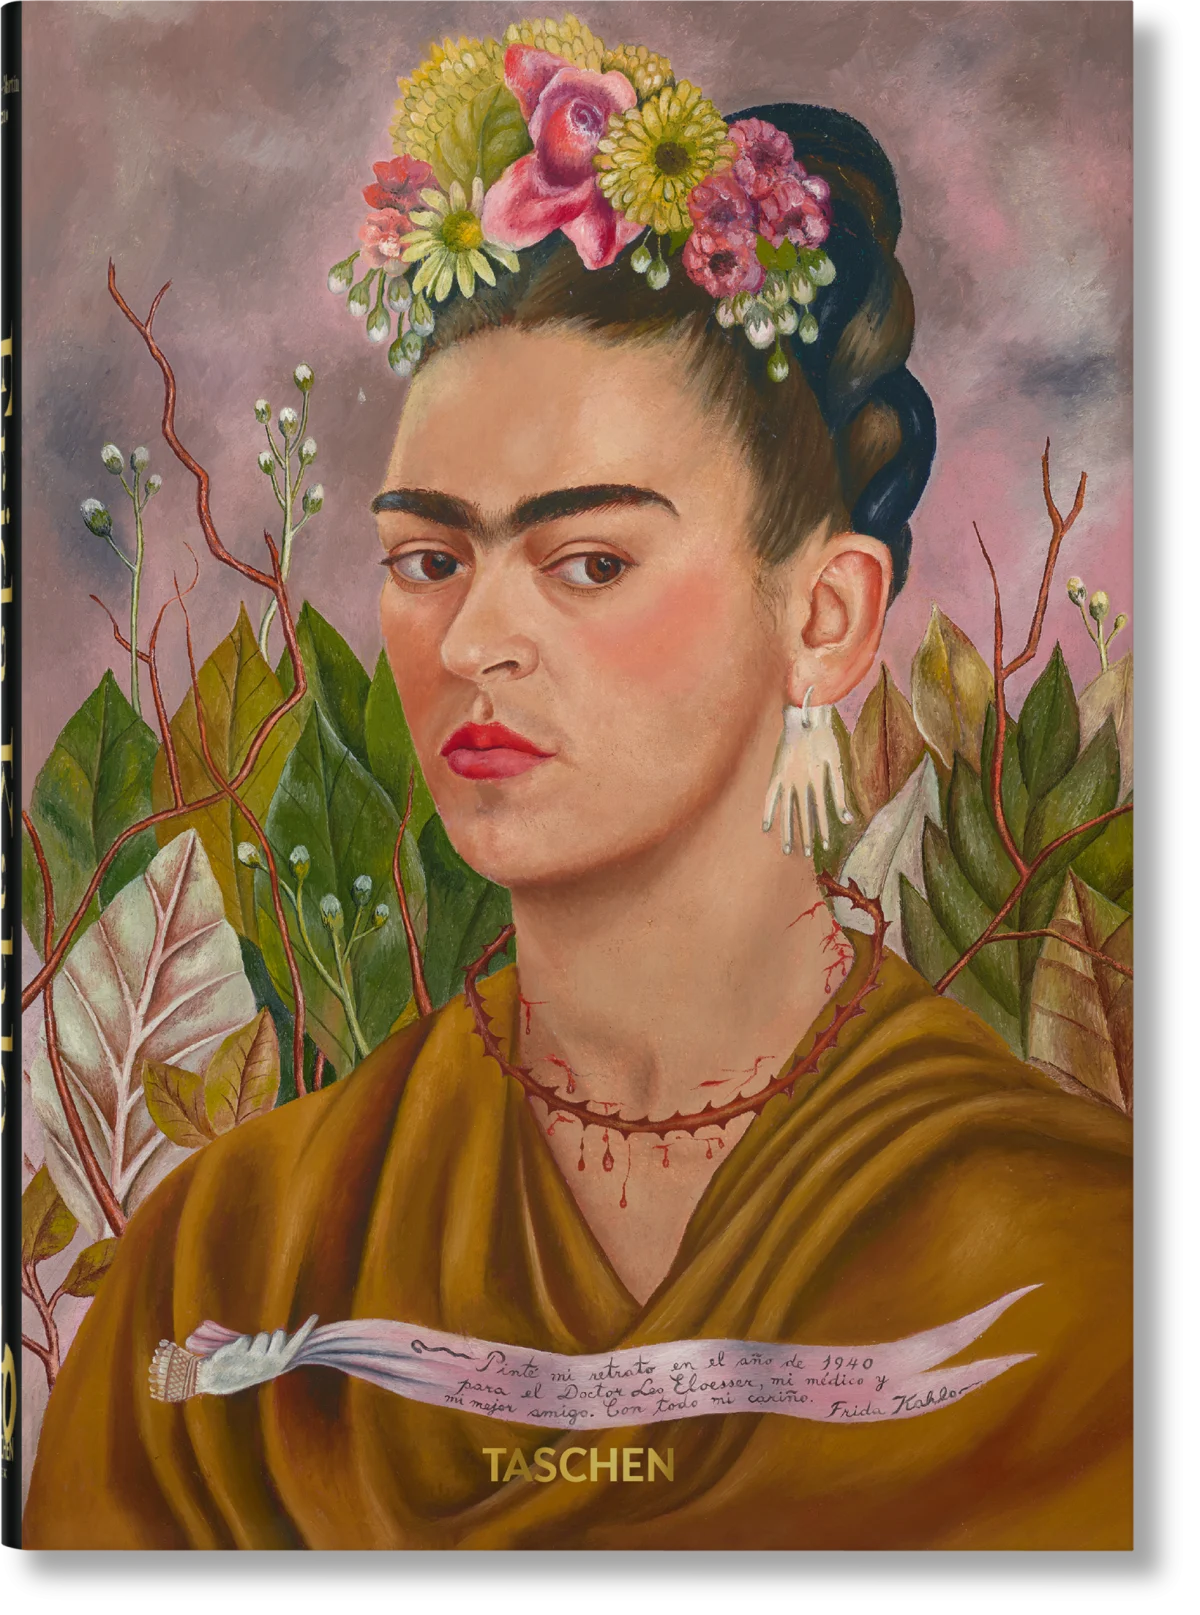 TASCHEN Terbitkan Buku Biografi Bergambar Frida Kahlo Edisi ke 40